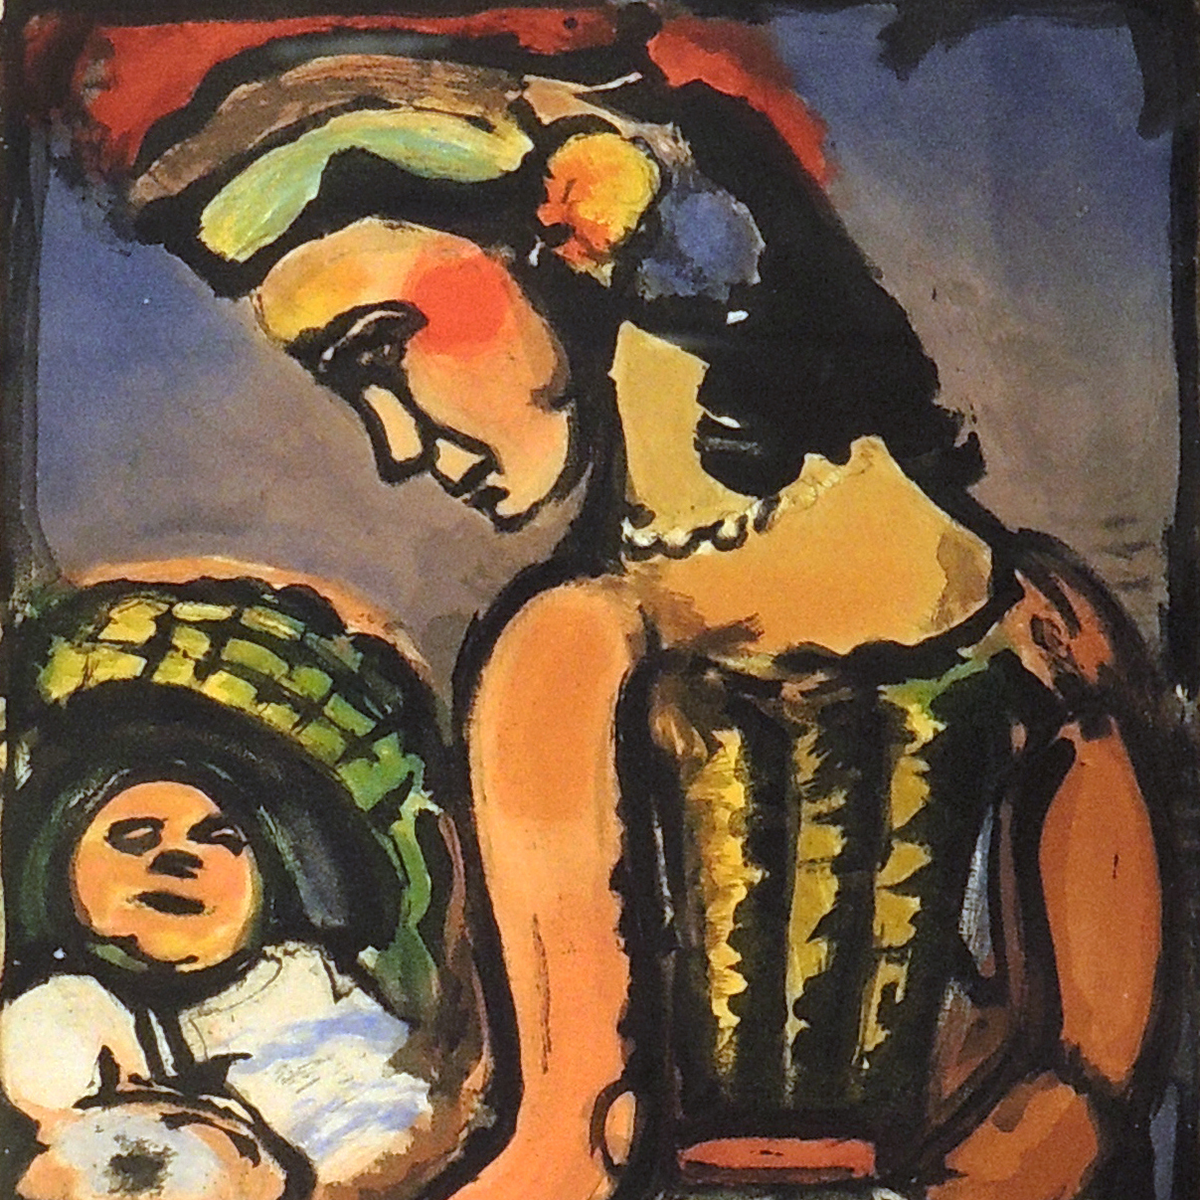 セール品ジョルジュ・ルオー「伏目の娼婦」（悪の華）1937年 銅版画、エッチング